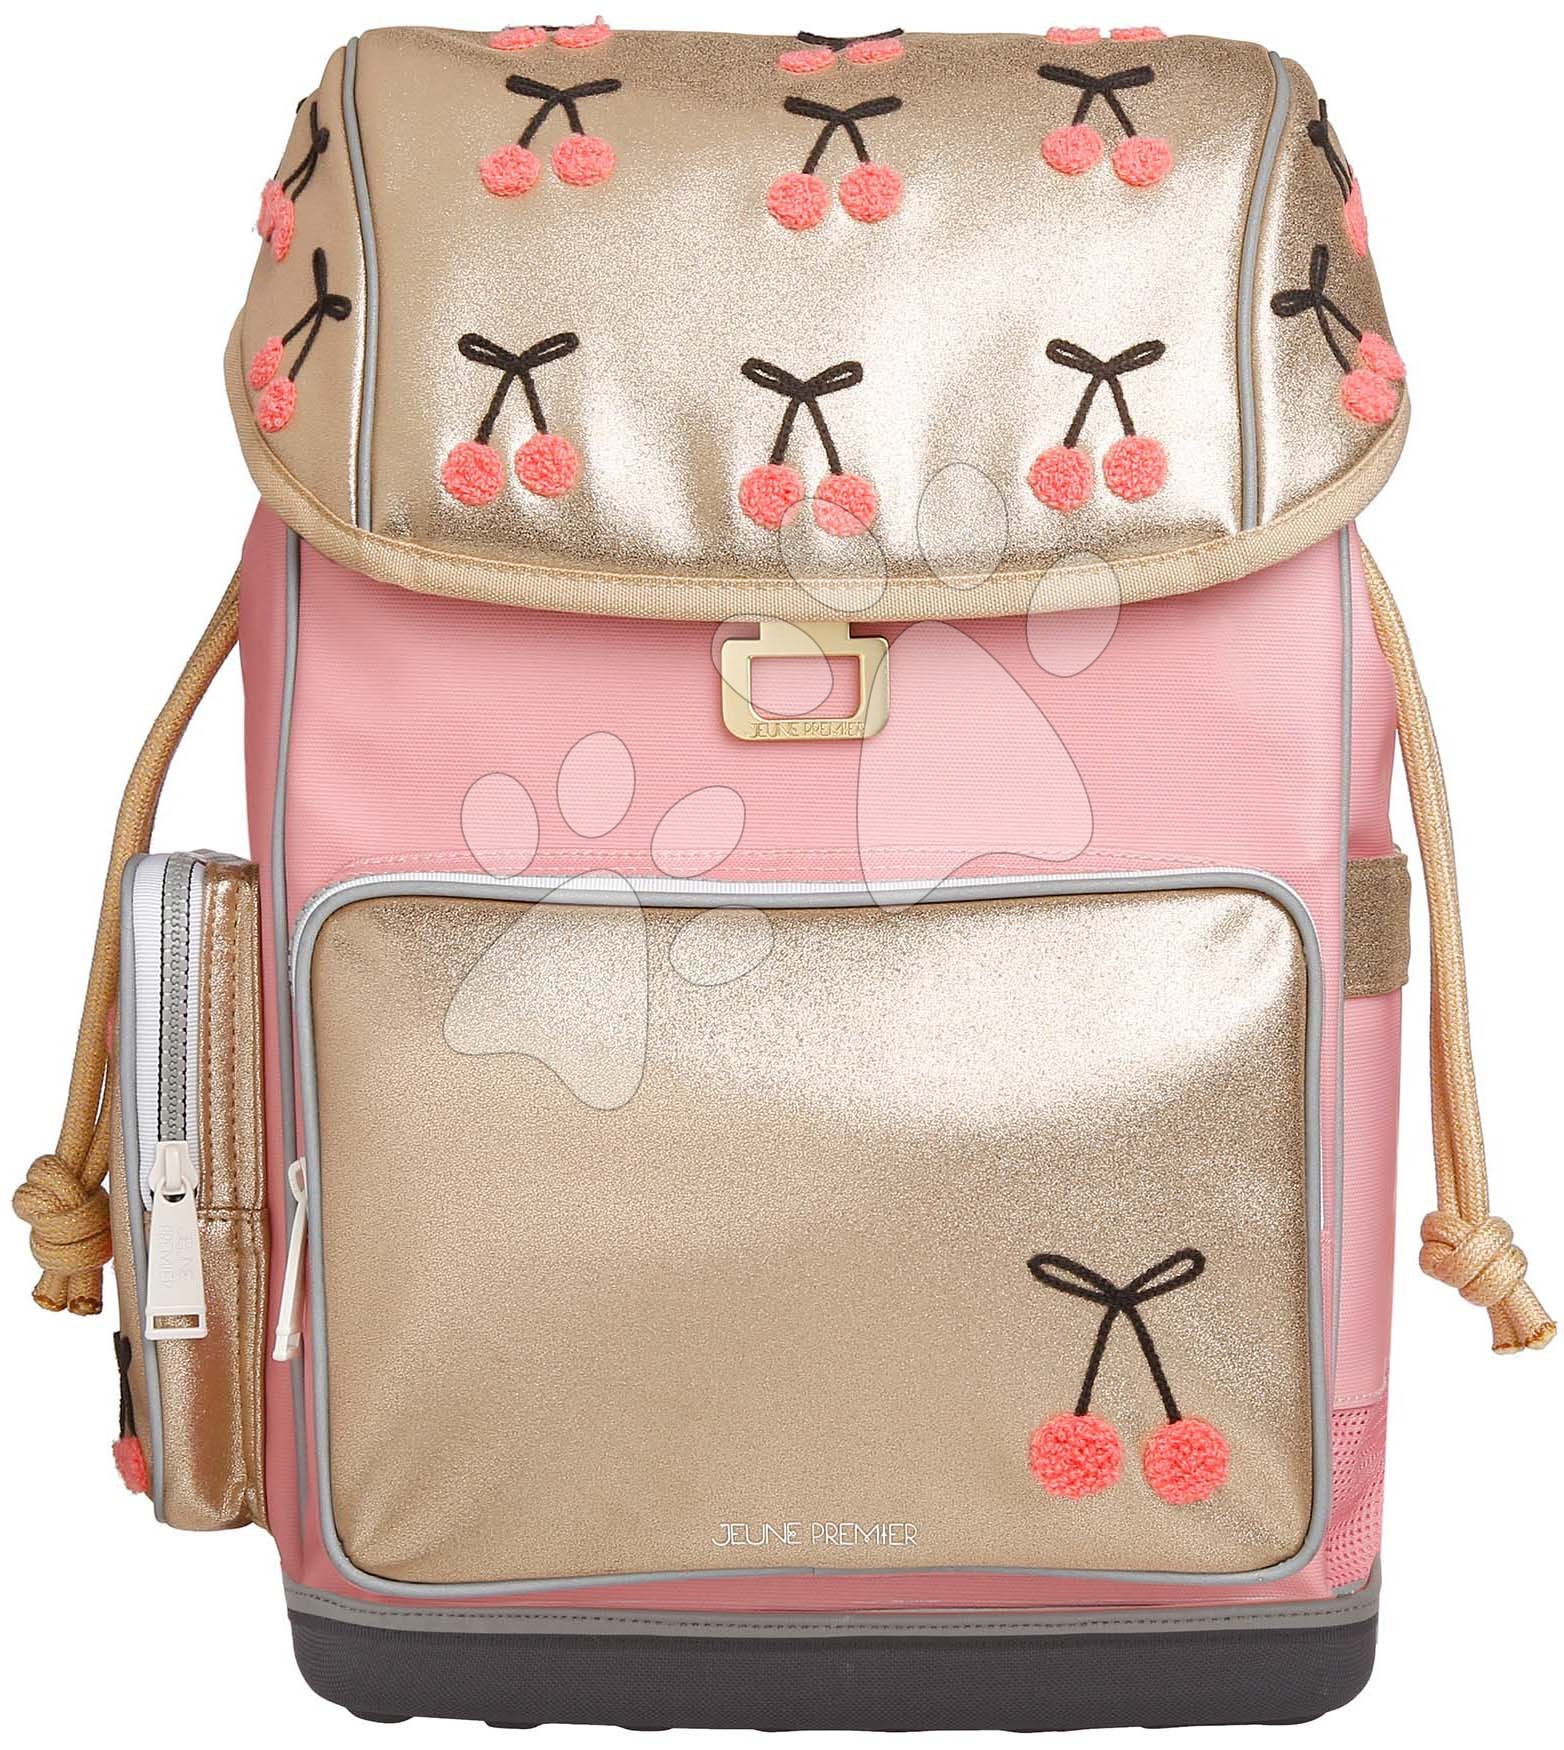 Školské tašky a batohy - Školský batoh veľký Ergomaxx Cherry Pompon Jeune Premier ergonomický luxusné prevedenie 39*26 cm